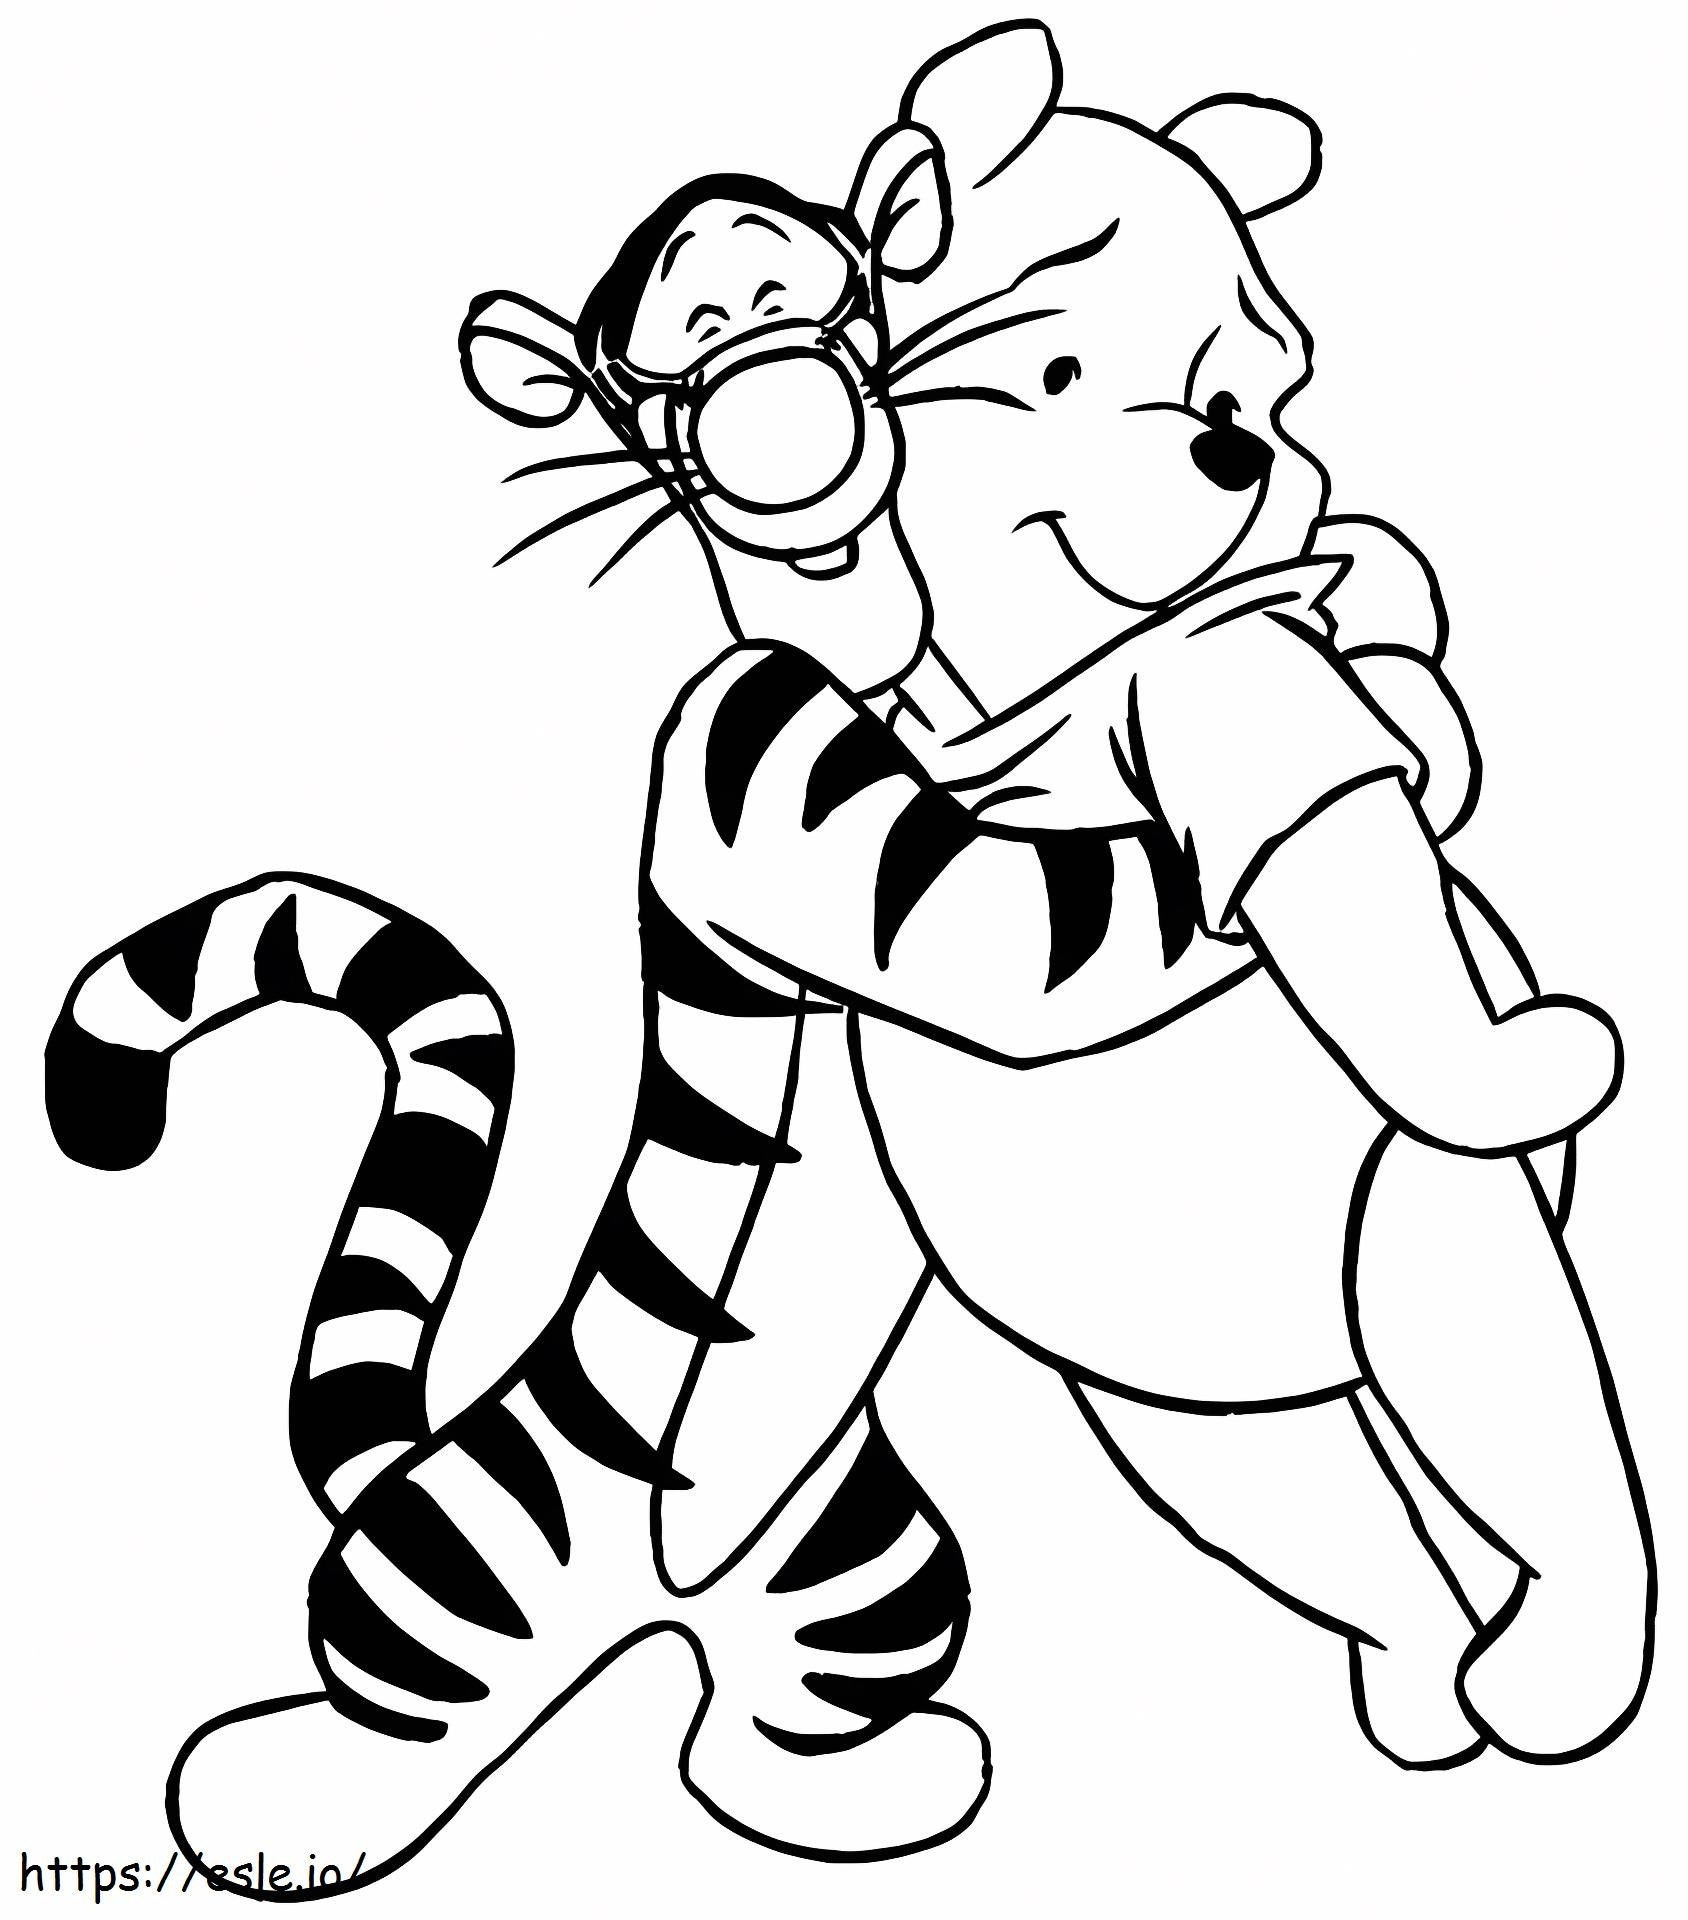 1532919356 Tigrão Abraçando Pooh A4 para colorir